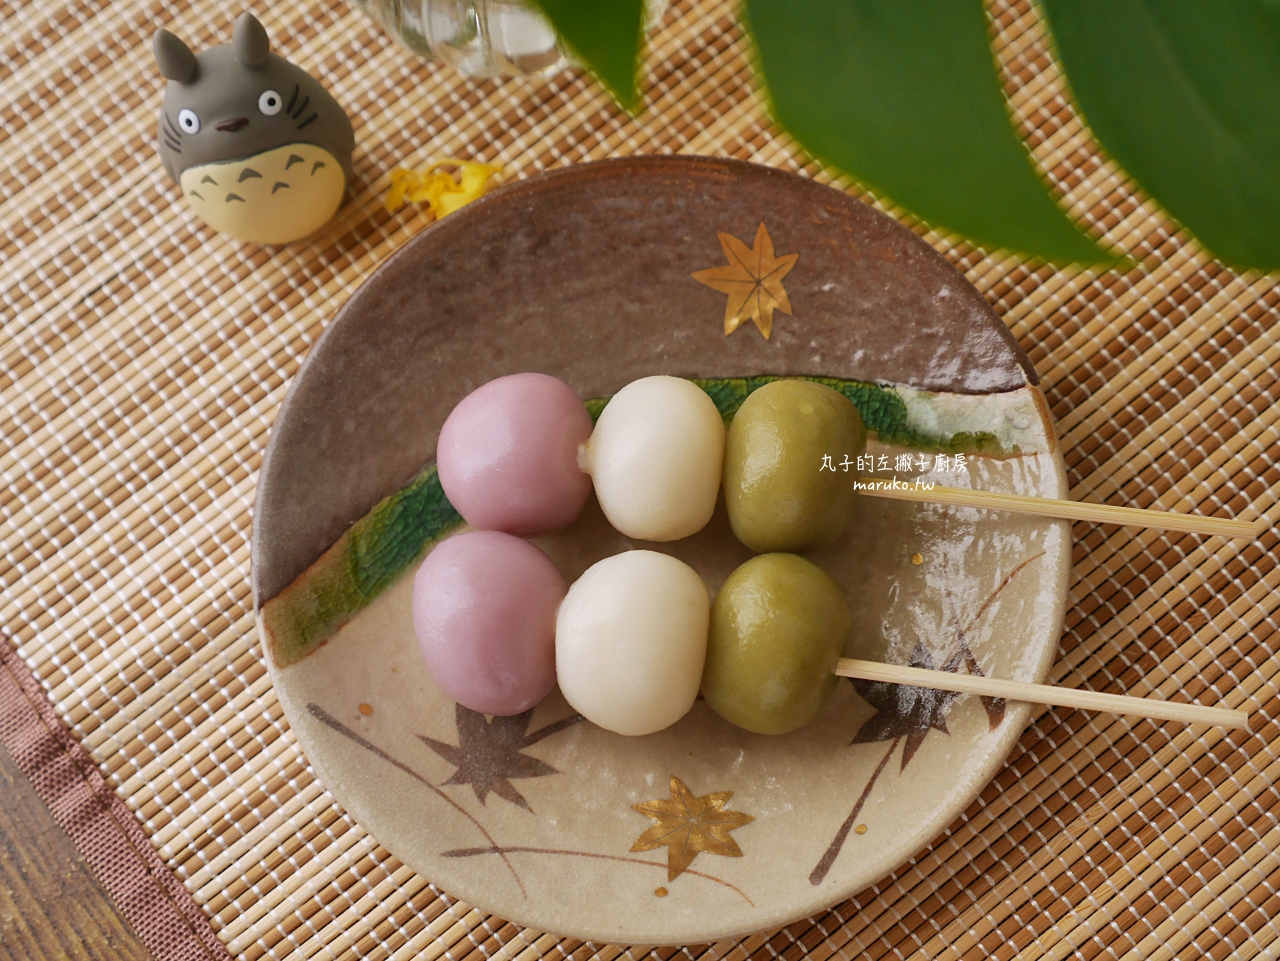 【食譜】三色糰子 花見糰子 月見糰子 只要二種粉混合均勻 日本祭典路邊攤小吃 @Maruko與美食有個約會